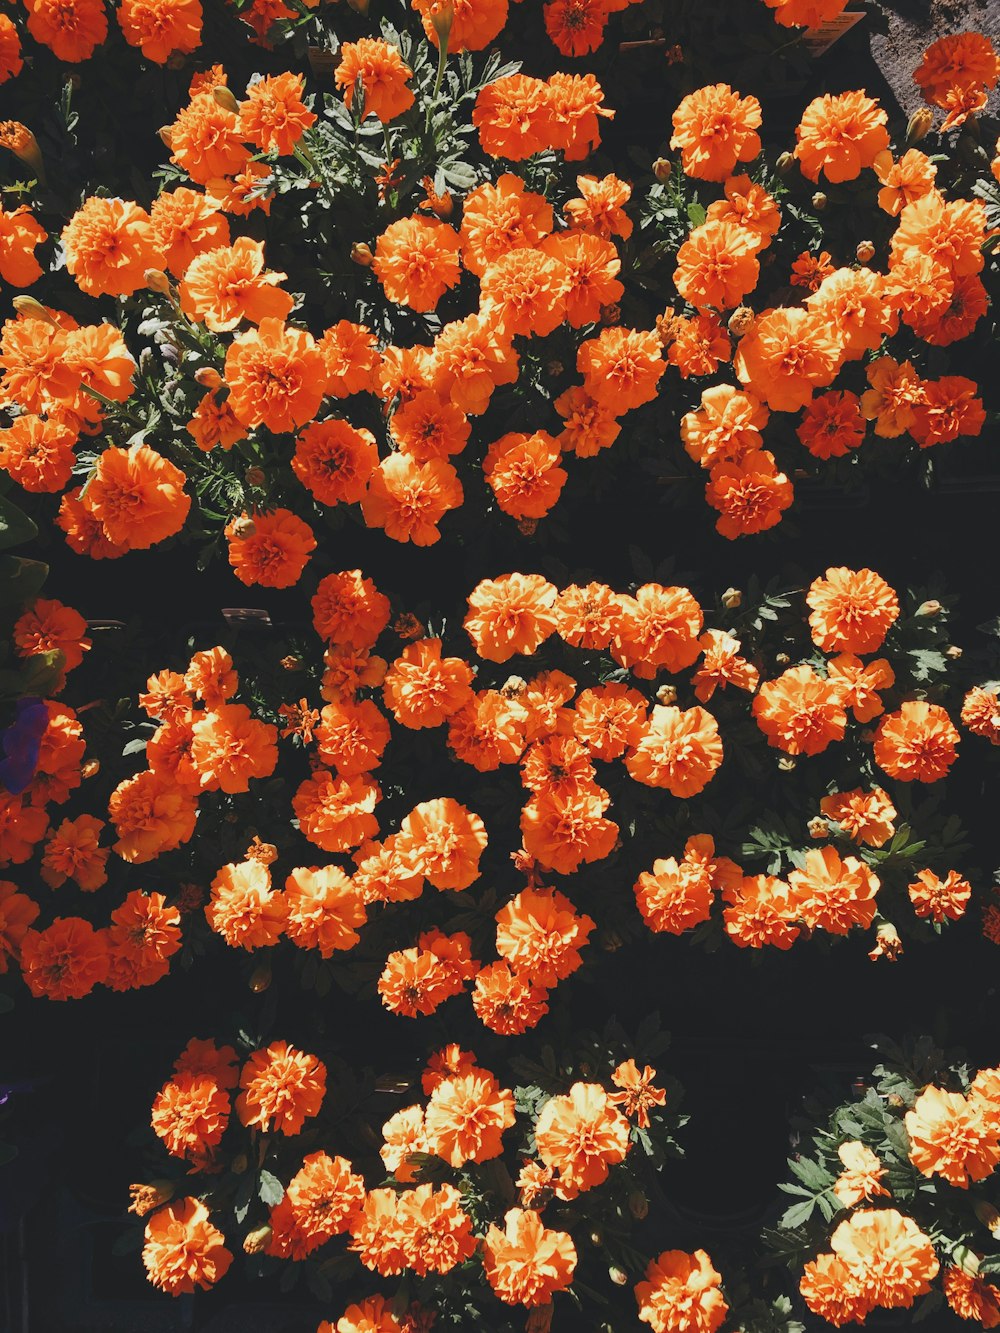 Hình ảnh hoa màu cam đỏ tươi sáng là điều tuyệt vời để mang lại sự sôi động cho bức tranh thiên nhiên. Với màu sắc đỏ rực rỡ, những cánh hoa này tạo nên một vẻ đẹp gợi cảm, quyến rũ và đầy cuốn hút. Hãy cùng nhìn những hình ảnh này để trải nghiệm vẻ đẹp hoàn hảo của hoa màu cam đỏ.